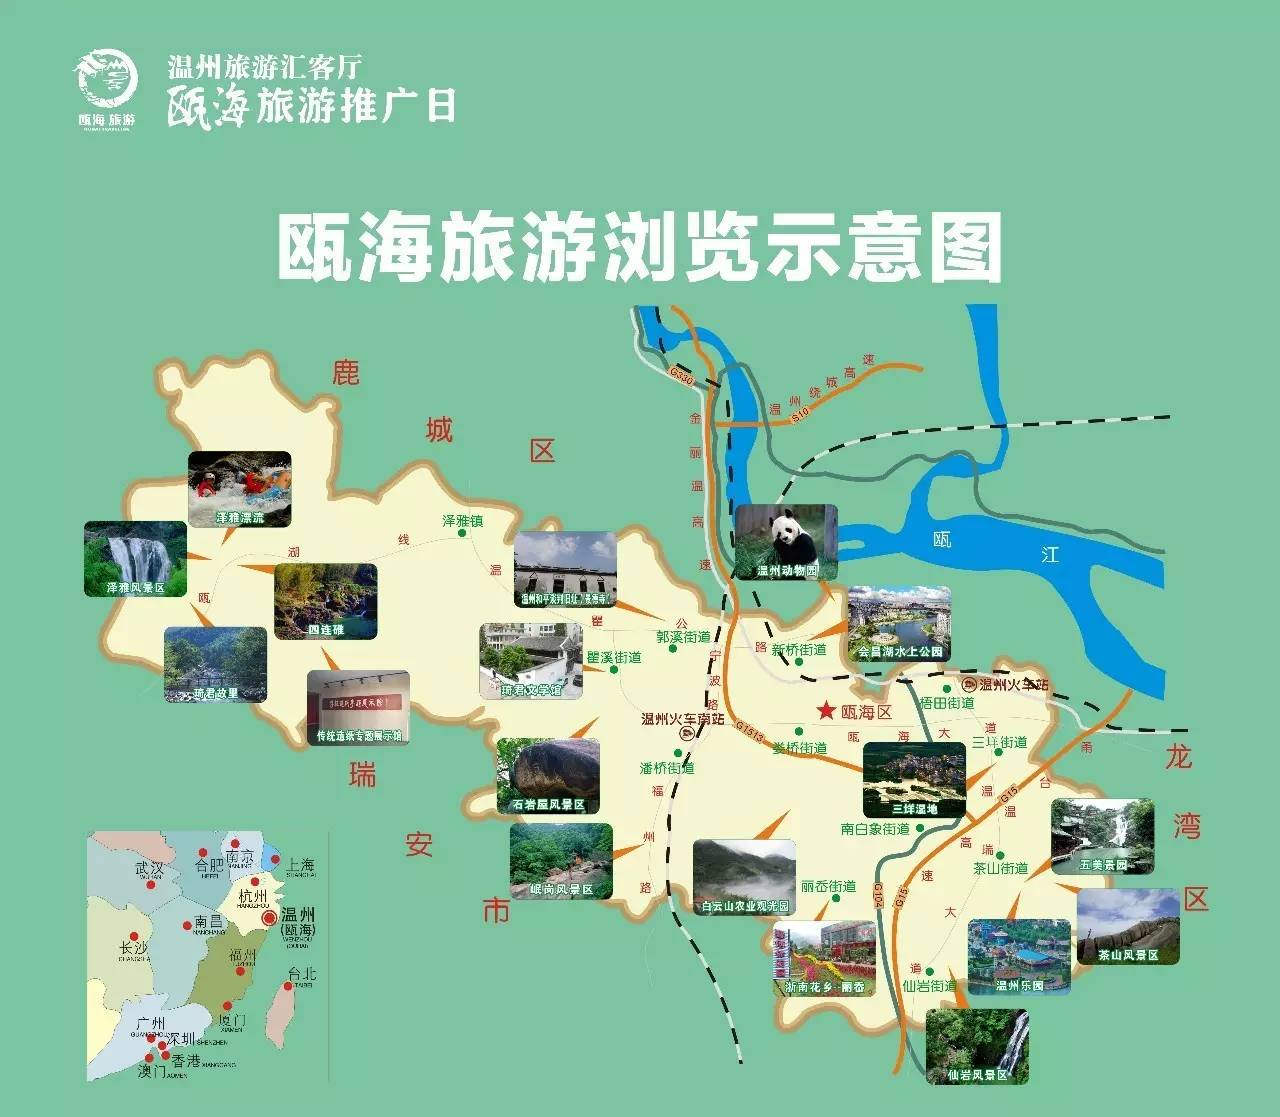 8月10日"温州旅游汇客厅"迎来瓯海旅游推广日,游客进场扫微信,有礼品